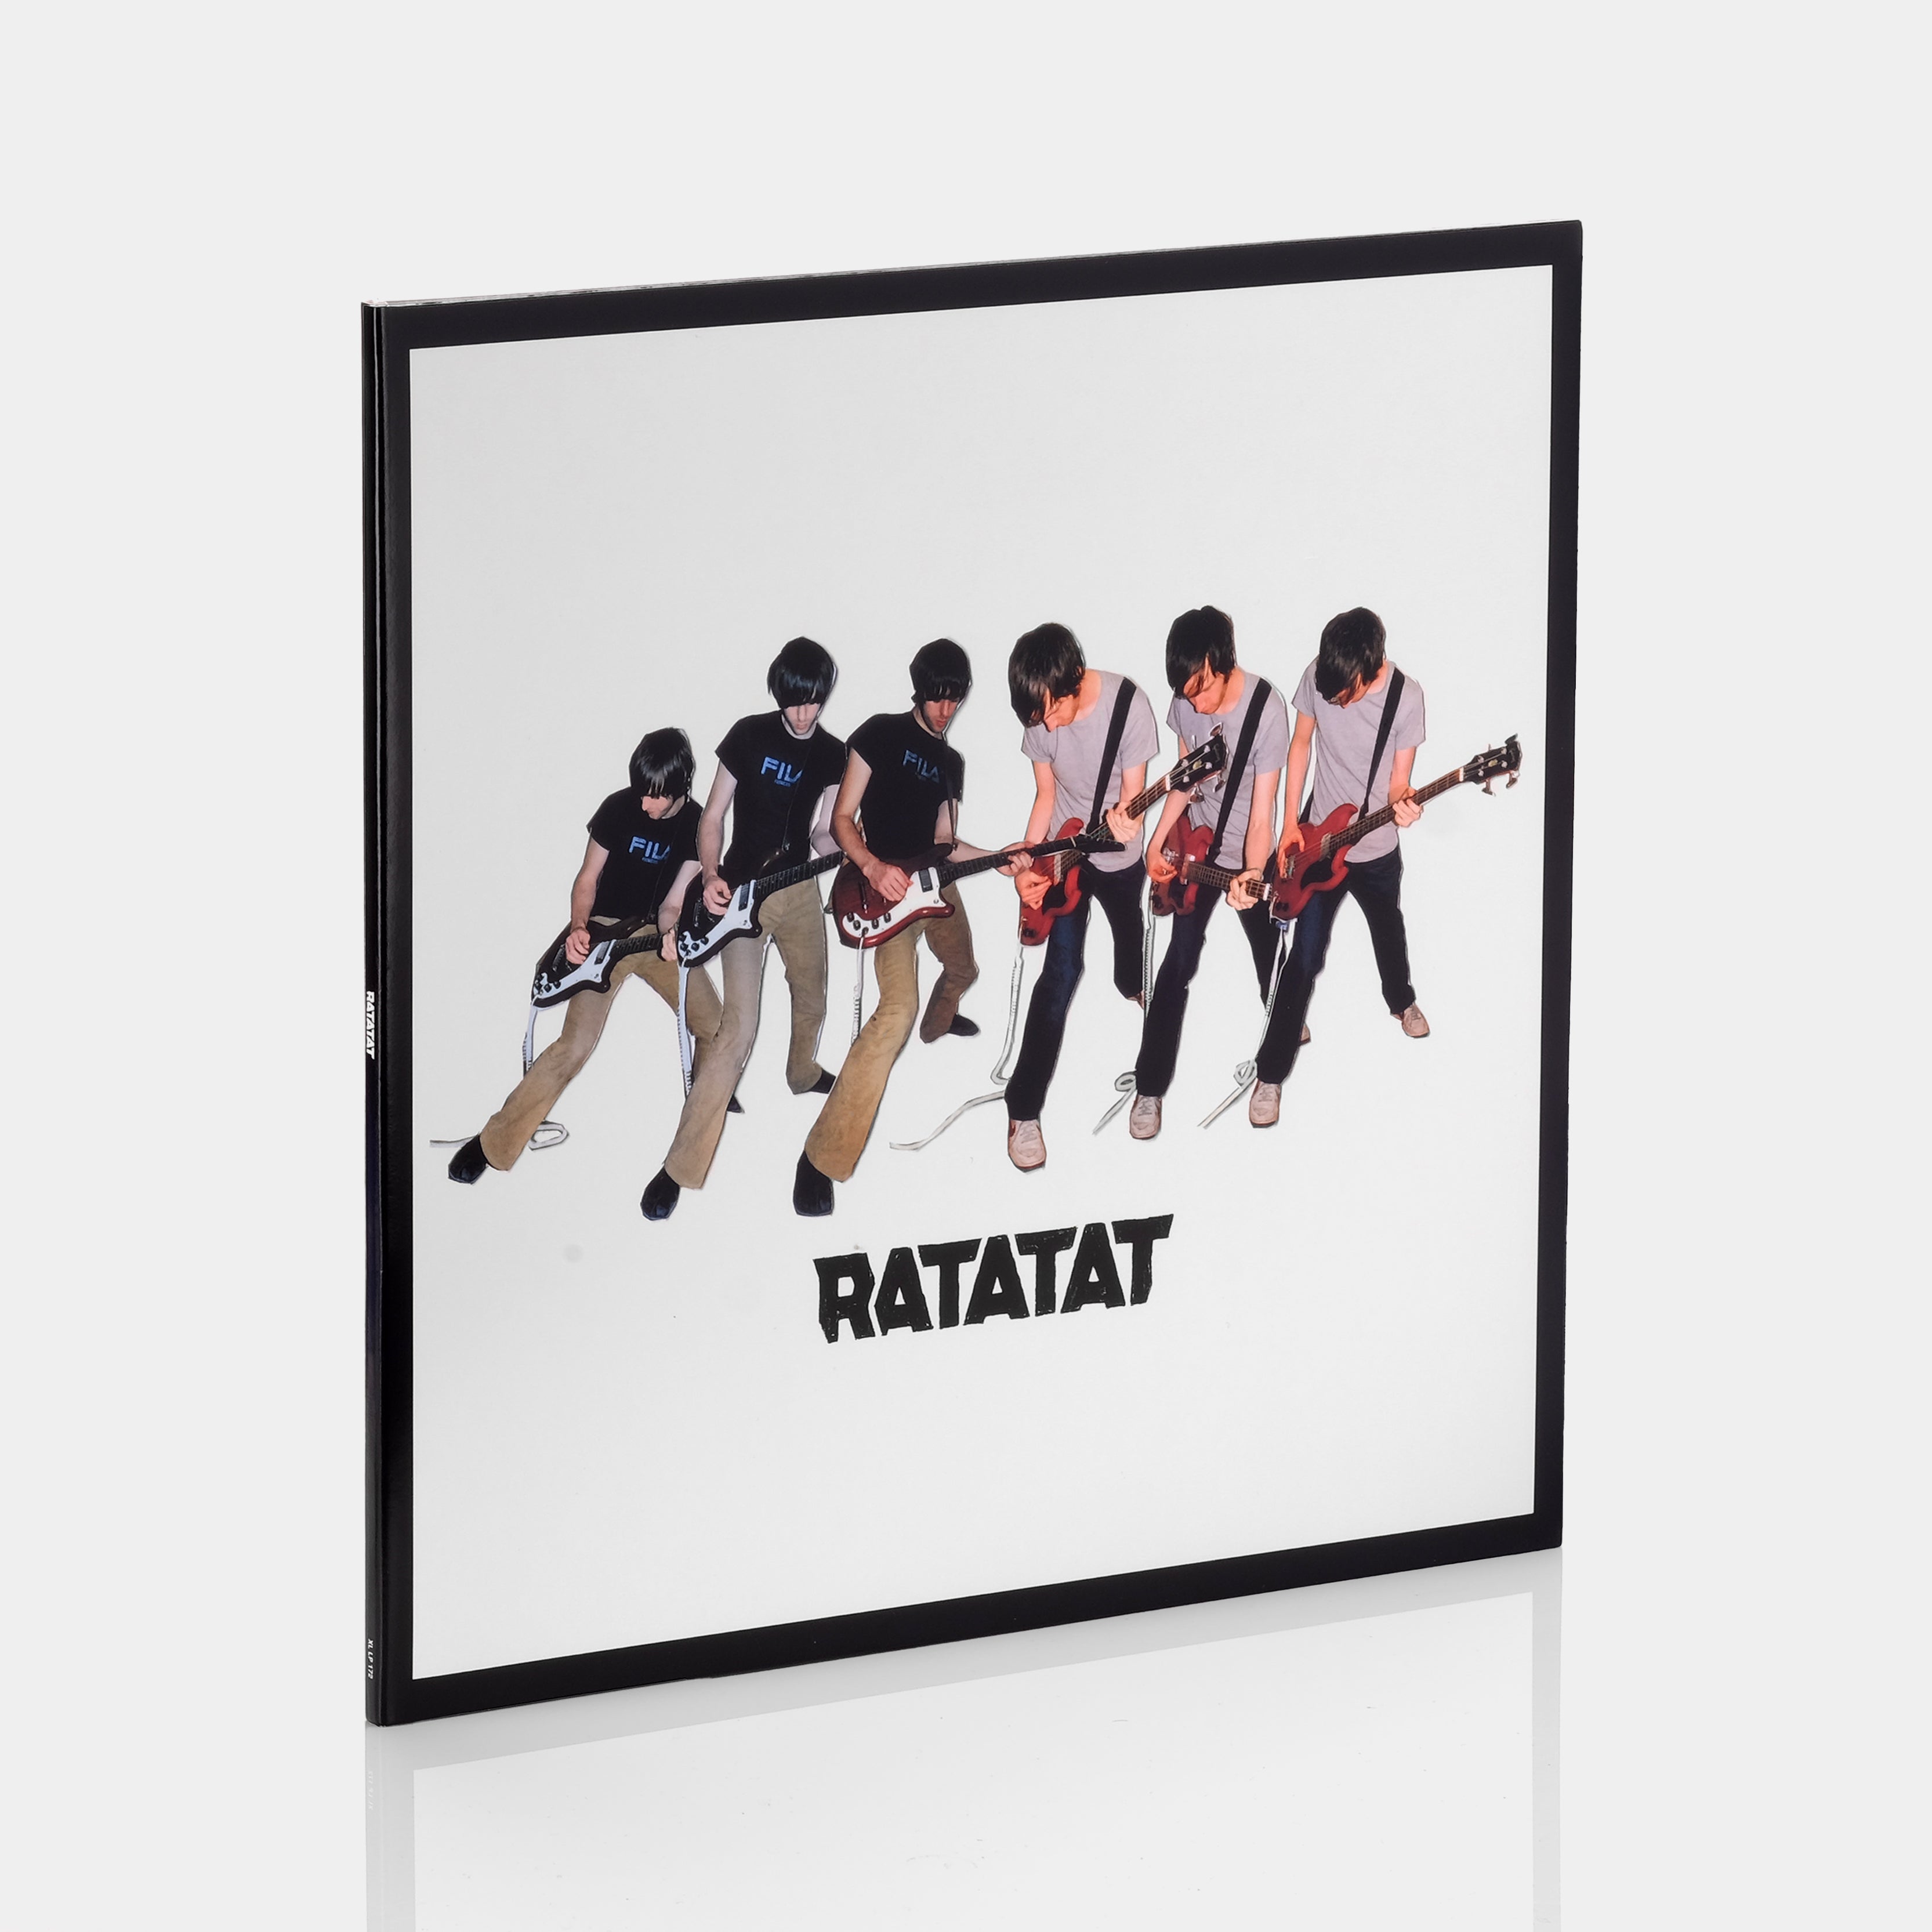 Ratatat - Ratatat LP Vinyl Record